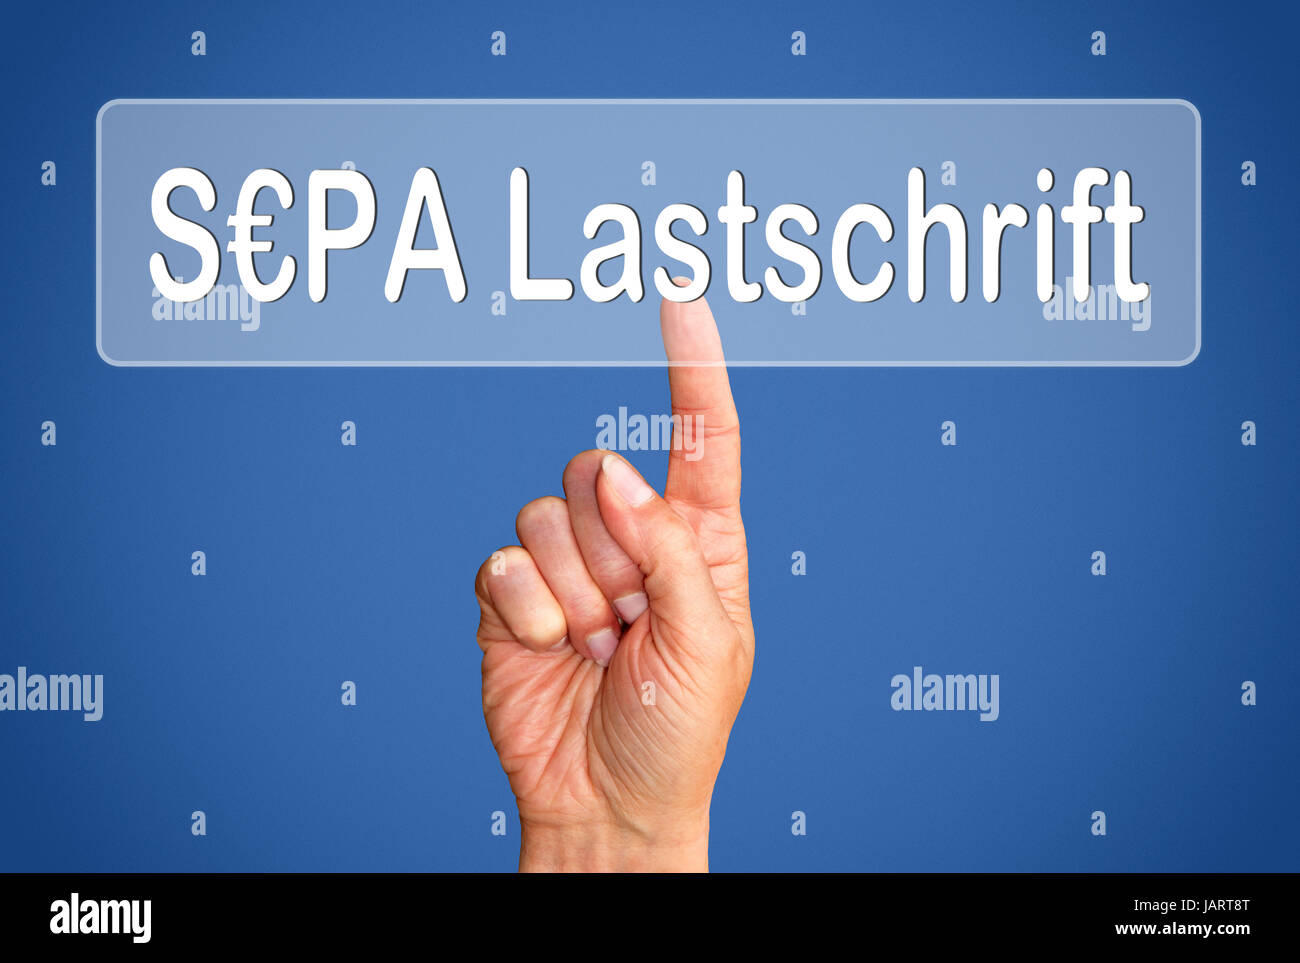 SEPA Lastschrift Stock Photo